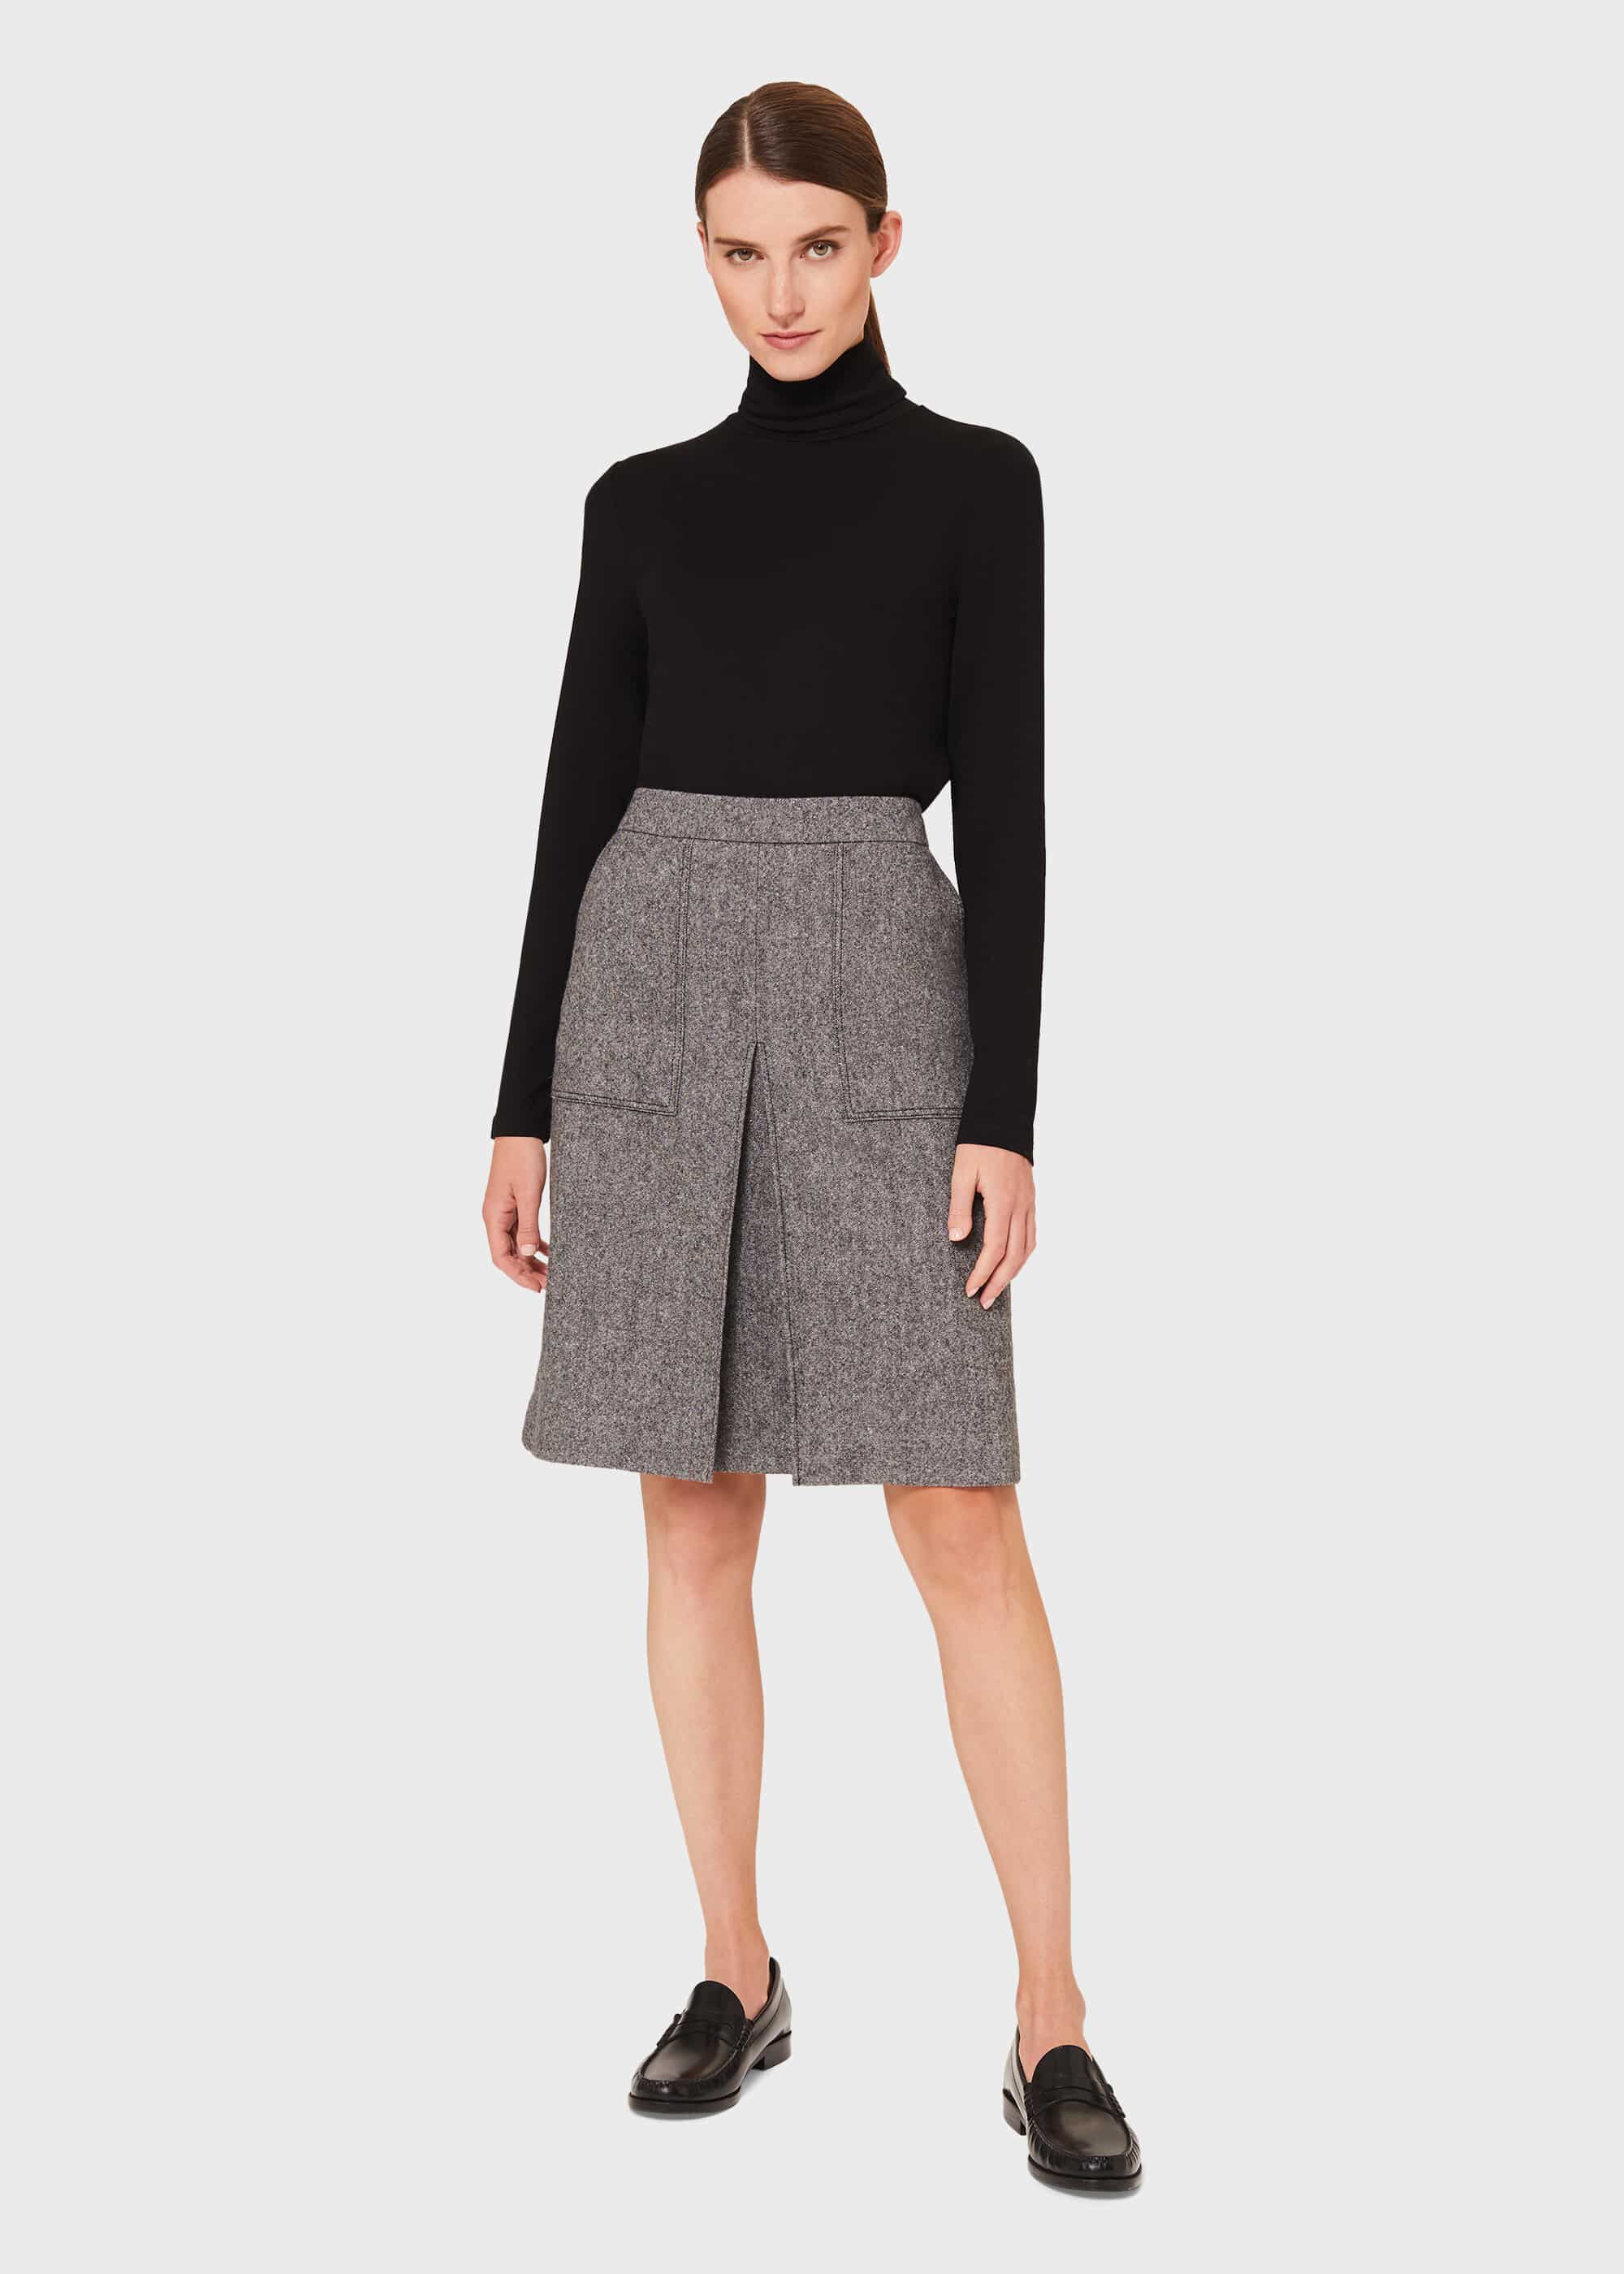 A-line Grey Women Woolen Skirt, Size: Large